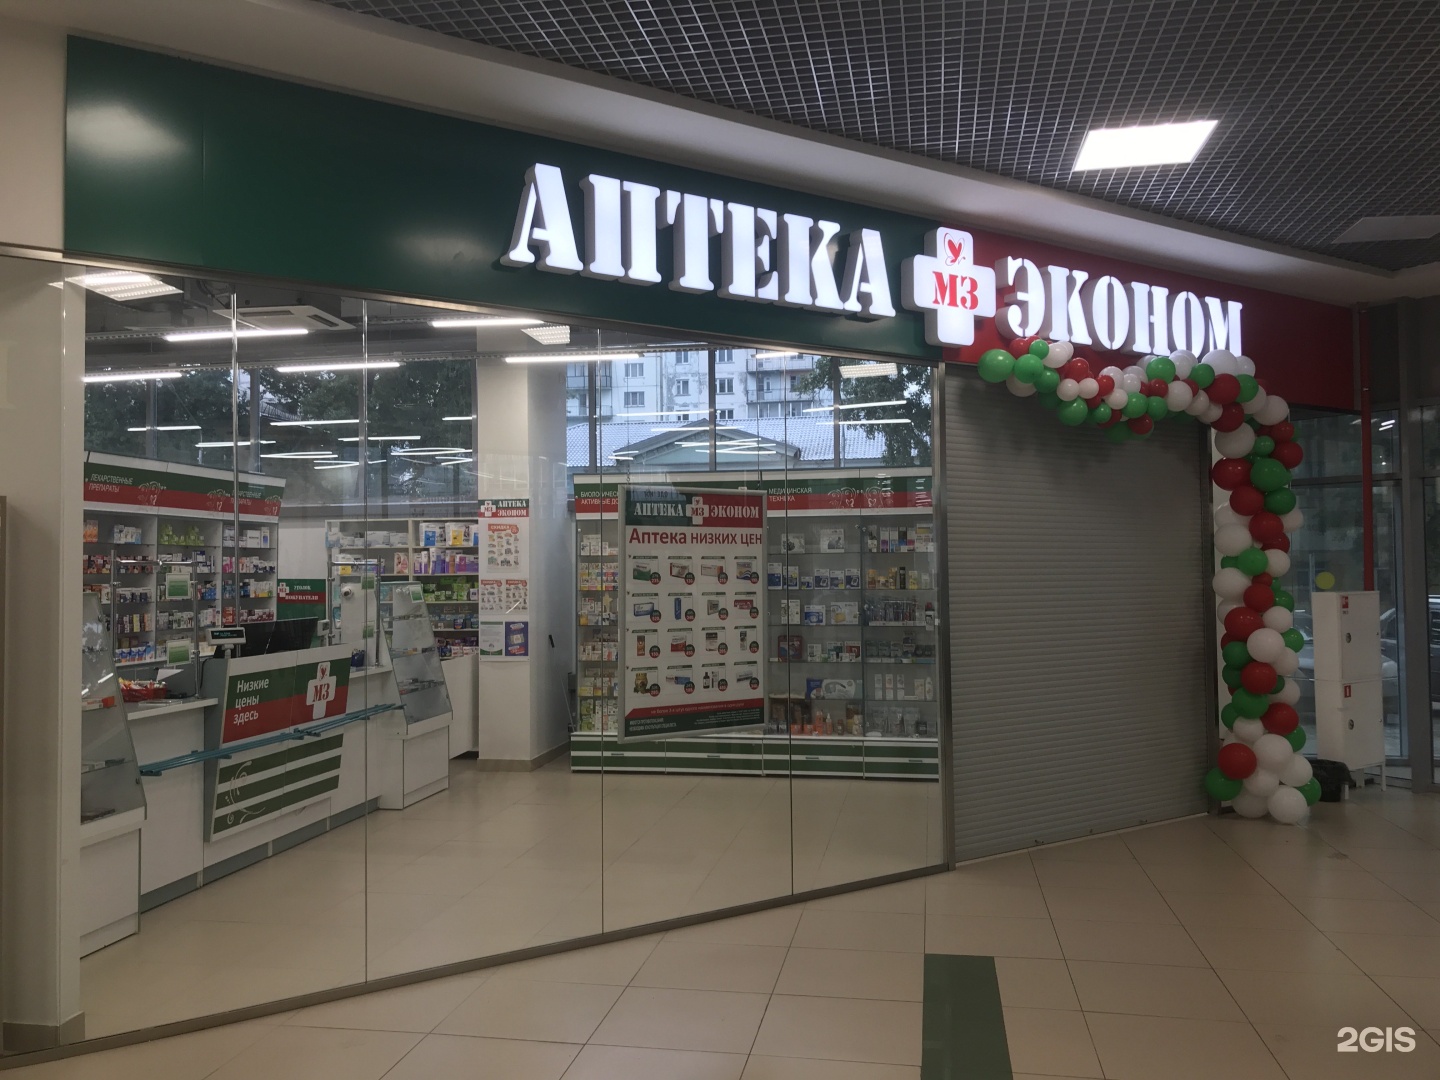 Аптека Эконом Ляпидевского